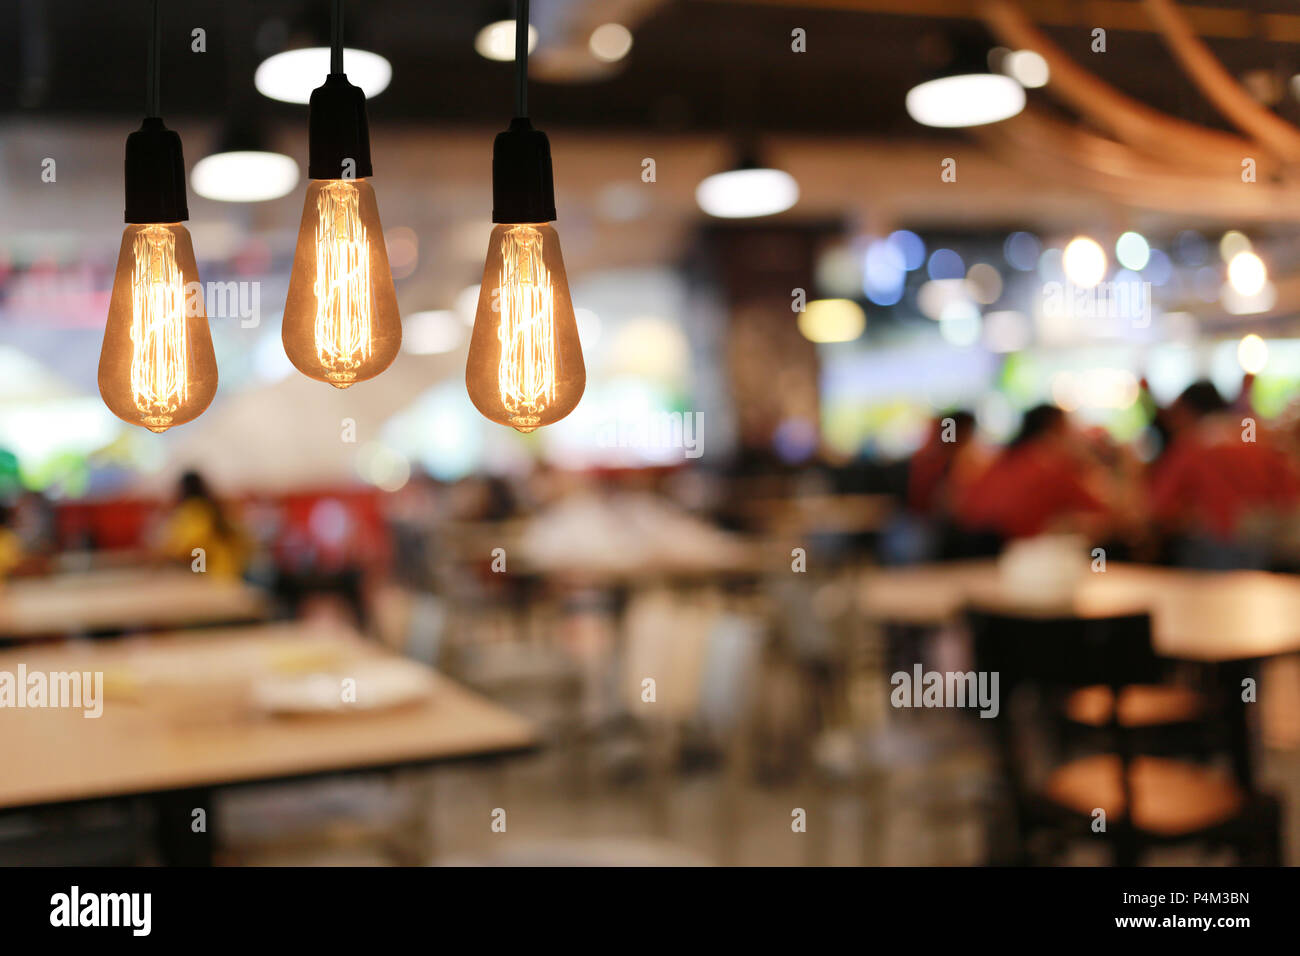 Lampes Vintage dans un restaurant,concept de l'intérieur avec des lumières. Banque D'Images